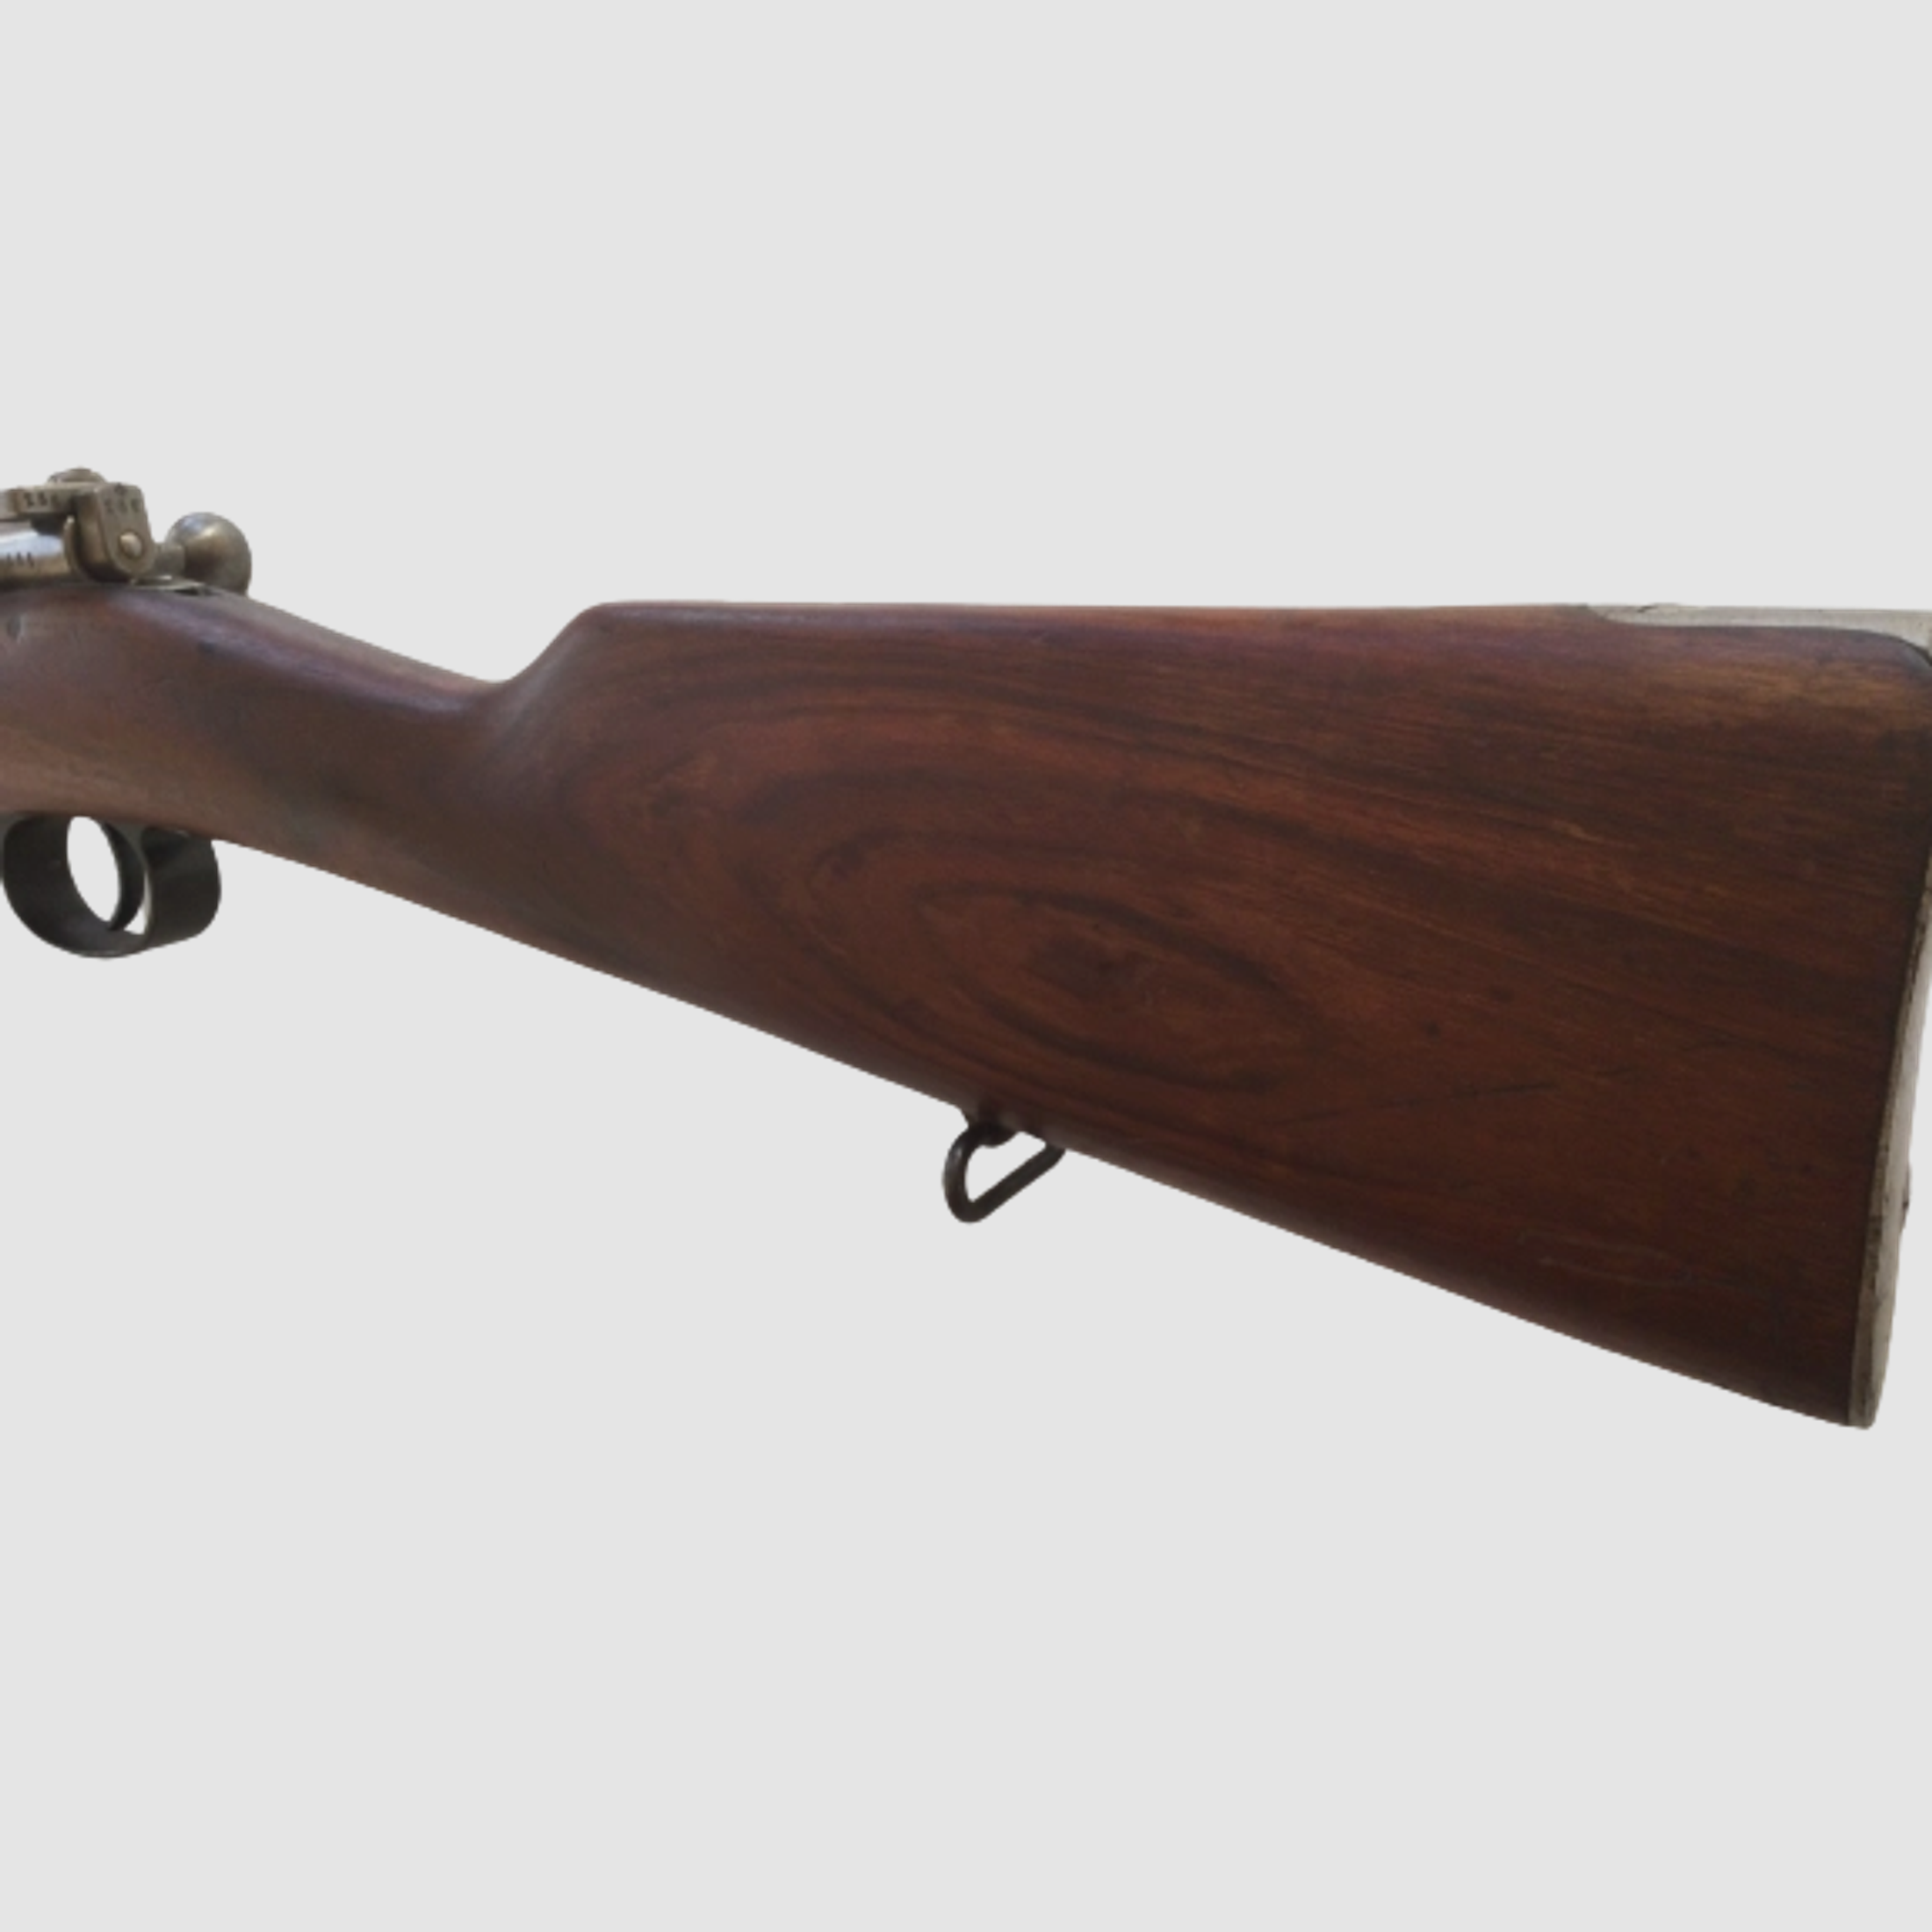 Carl Gustafs M96 Kal. 6,5×55 von 1913